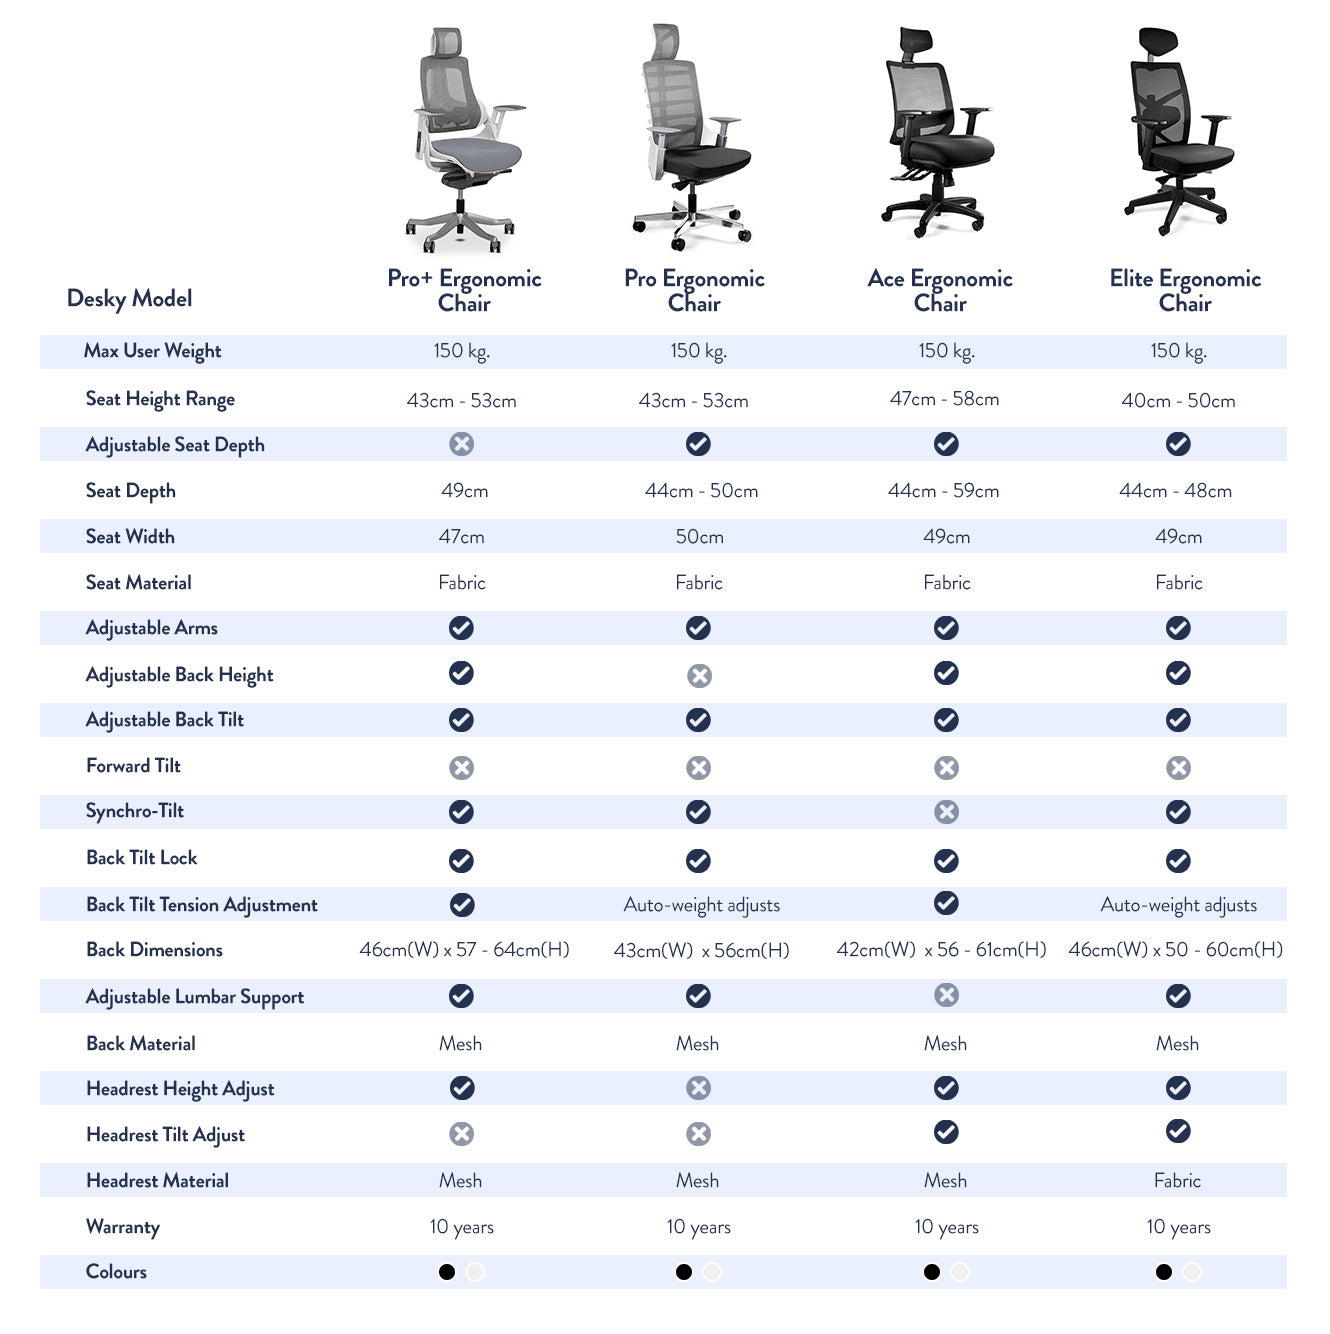 Desky ergonomic chair comparison